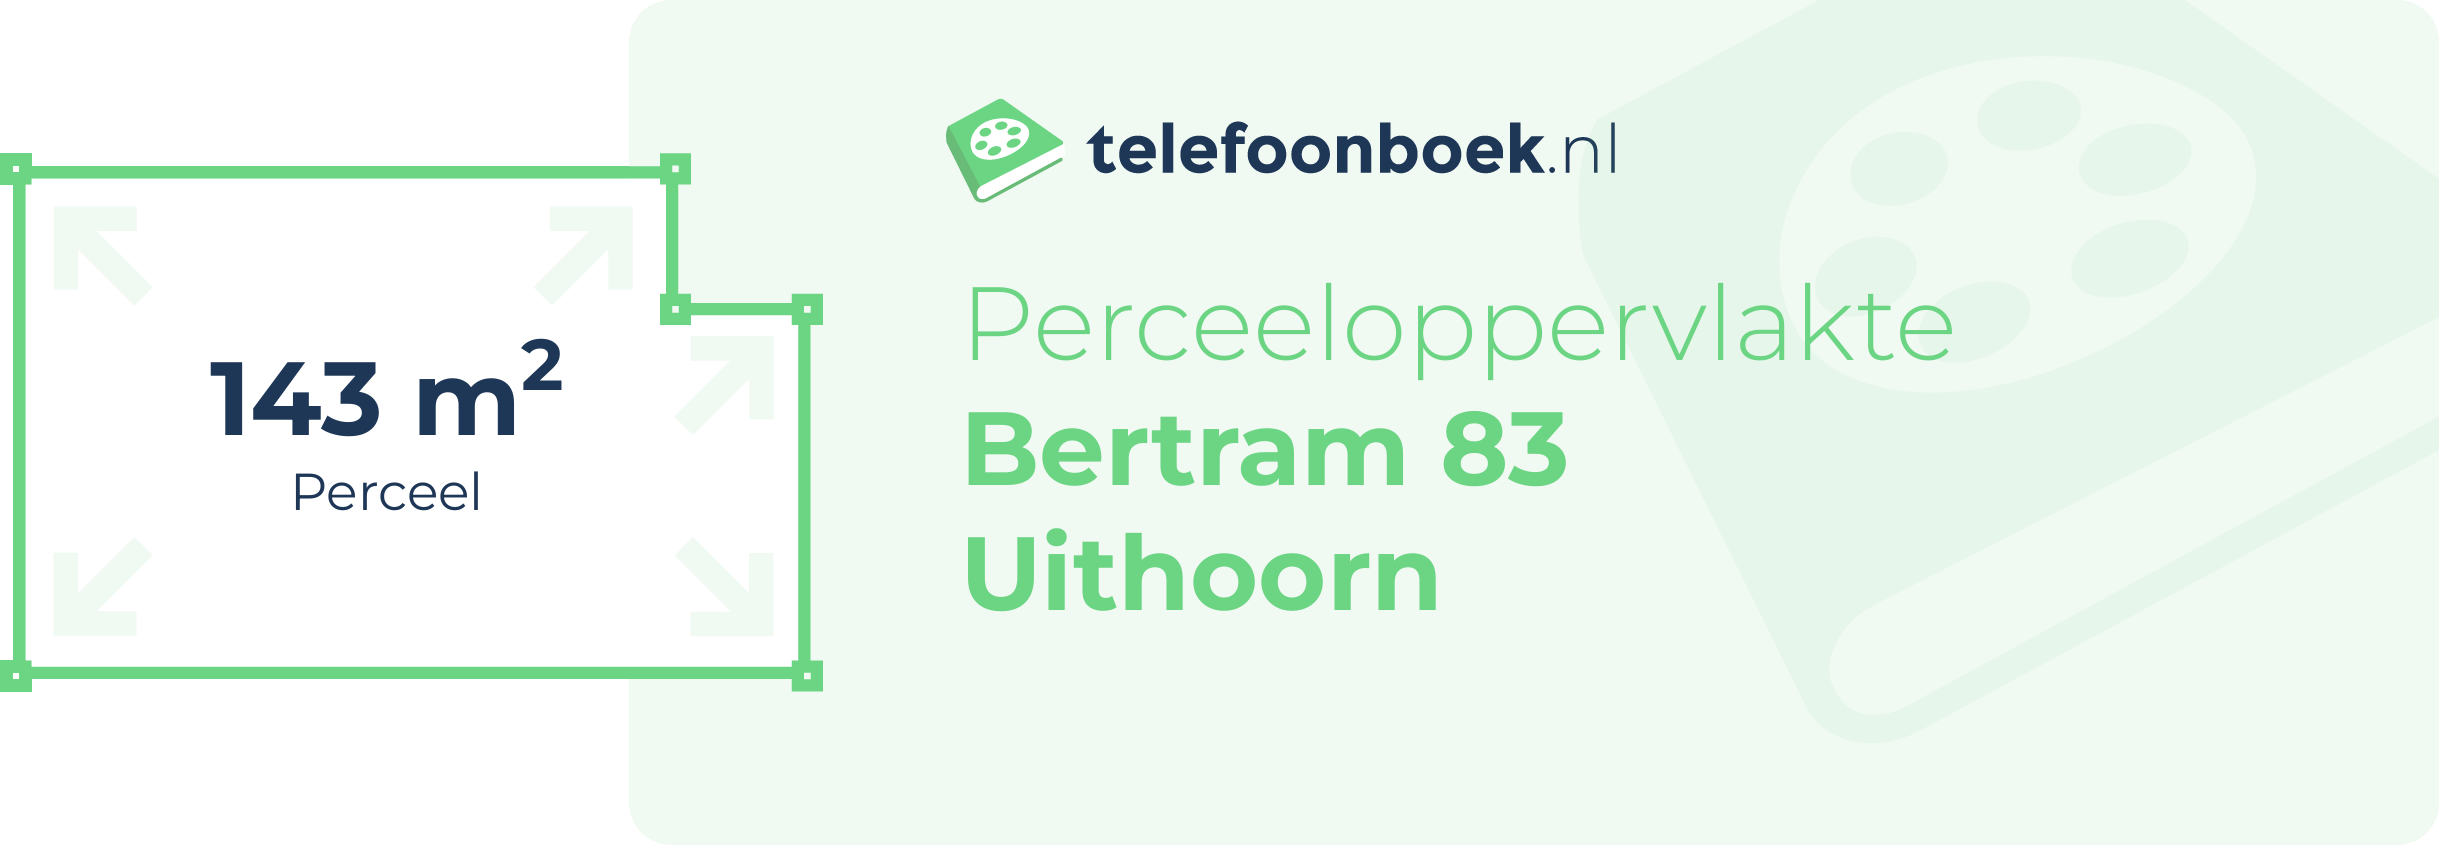 Perceeloppervlakte Bertram 83 Uithoorn